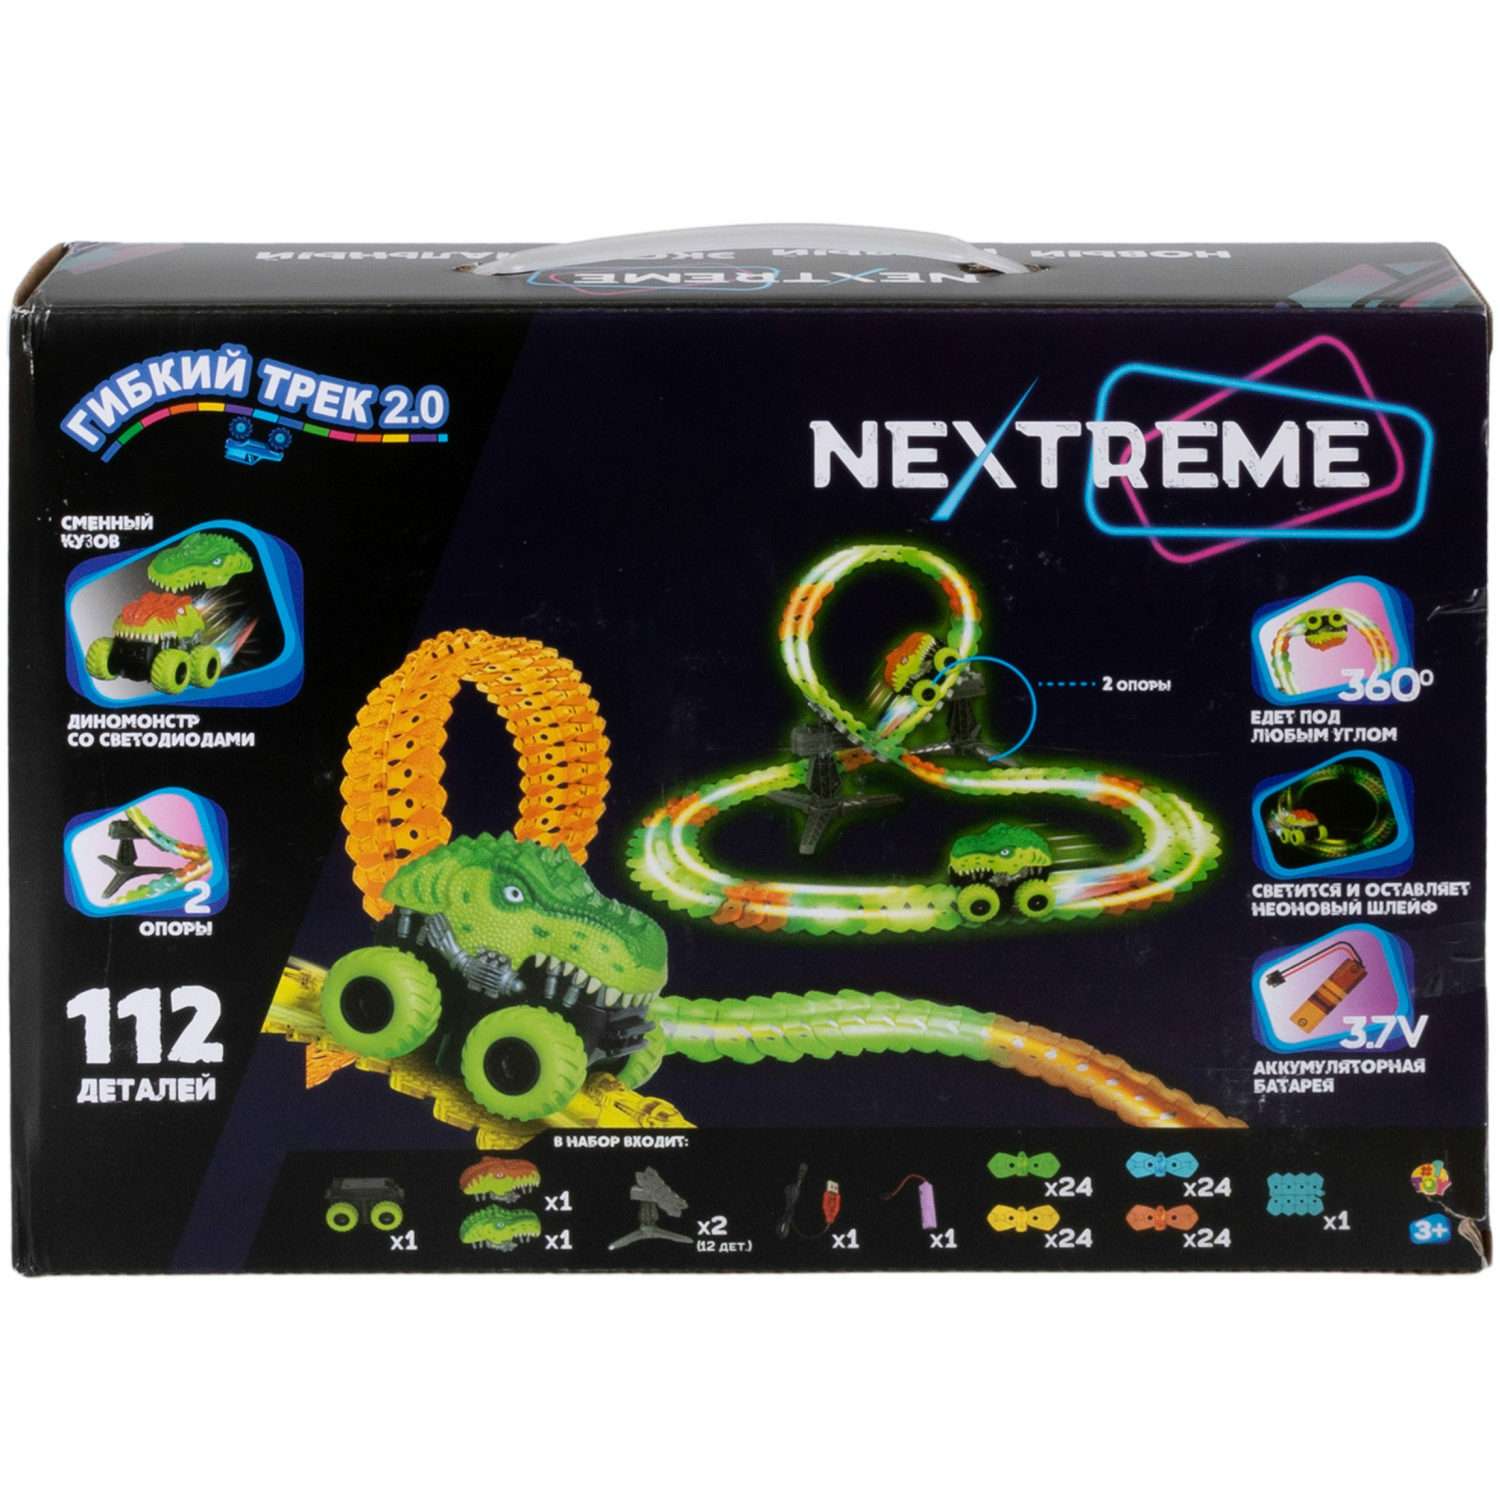 Гибкий трек с машинкой 1TOY Nextreme светящийся гоночная трасса дорога автотрек игрушки для мальчиков 112 деталей Т23909 - фото 6